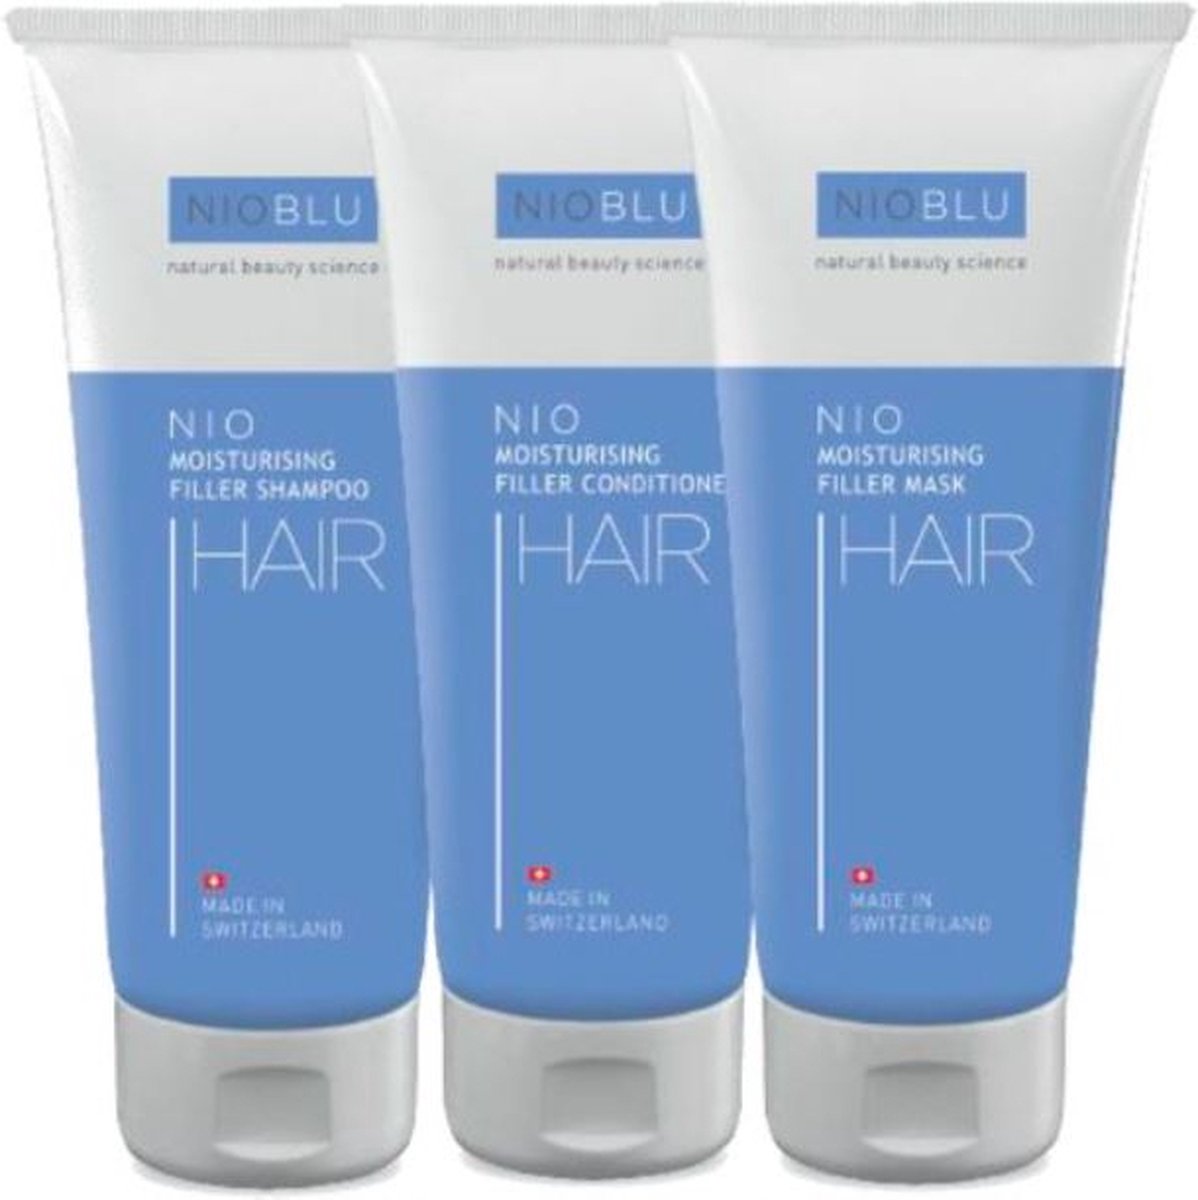 NIOBLU - Hair Care - Set